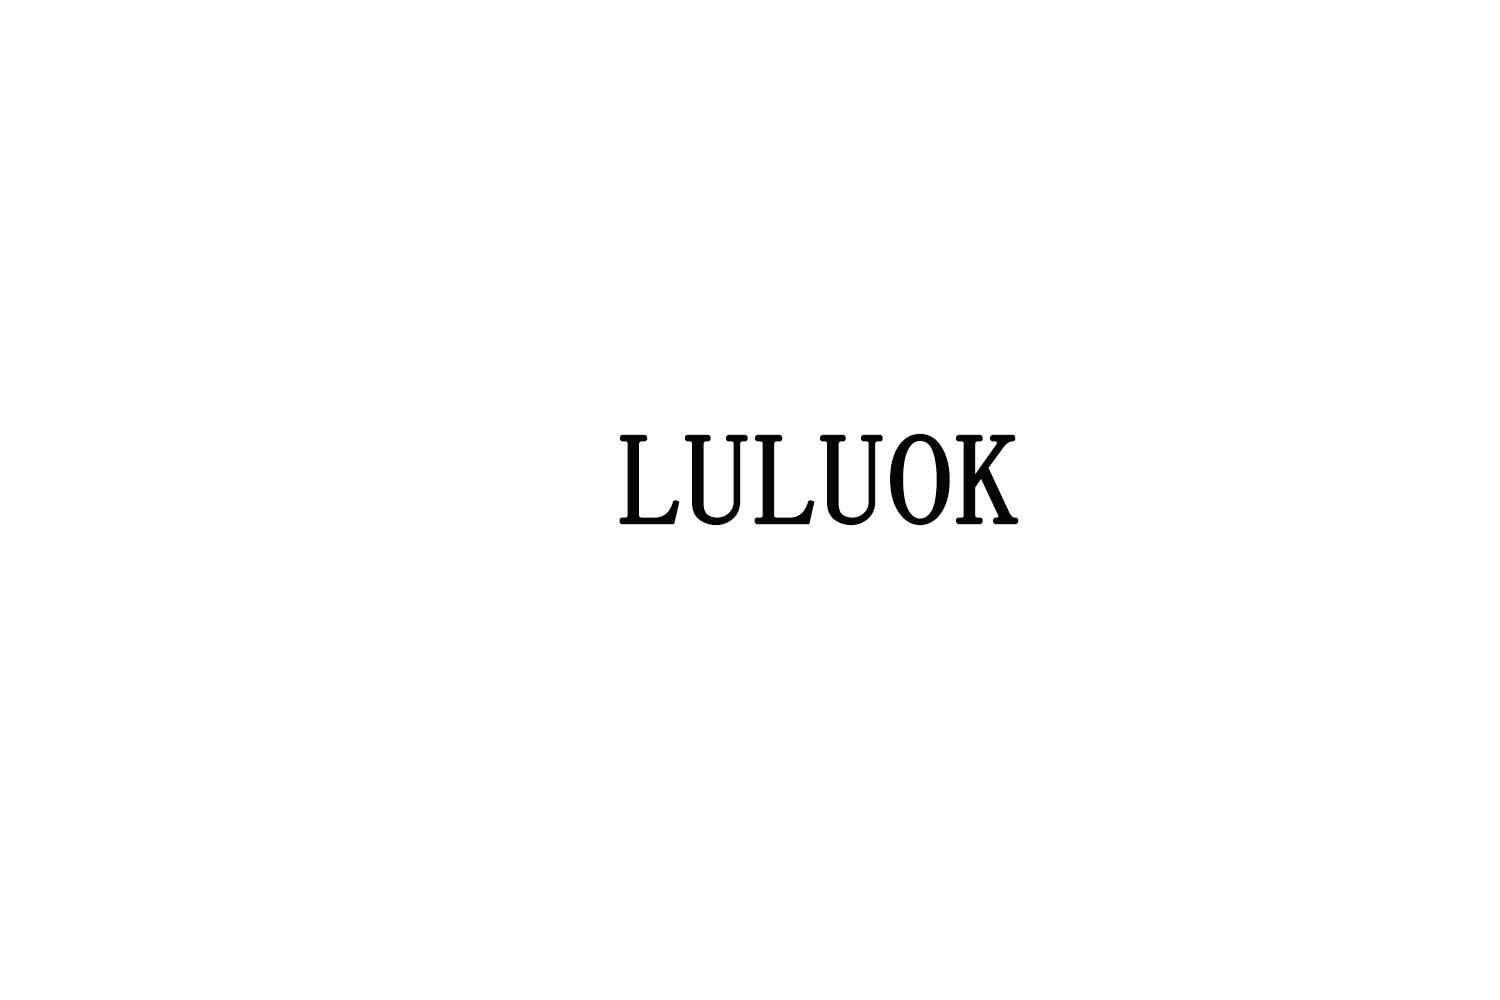 LULUOK